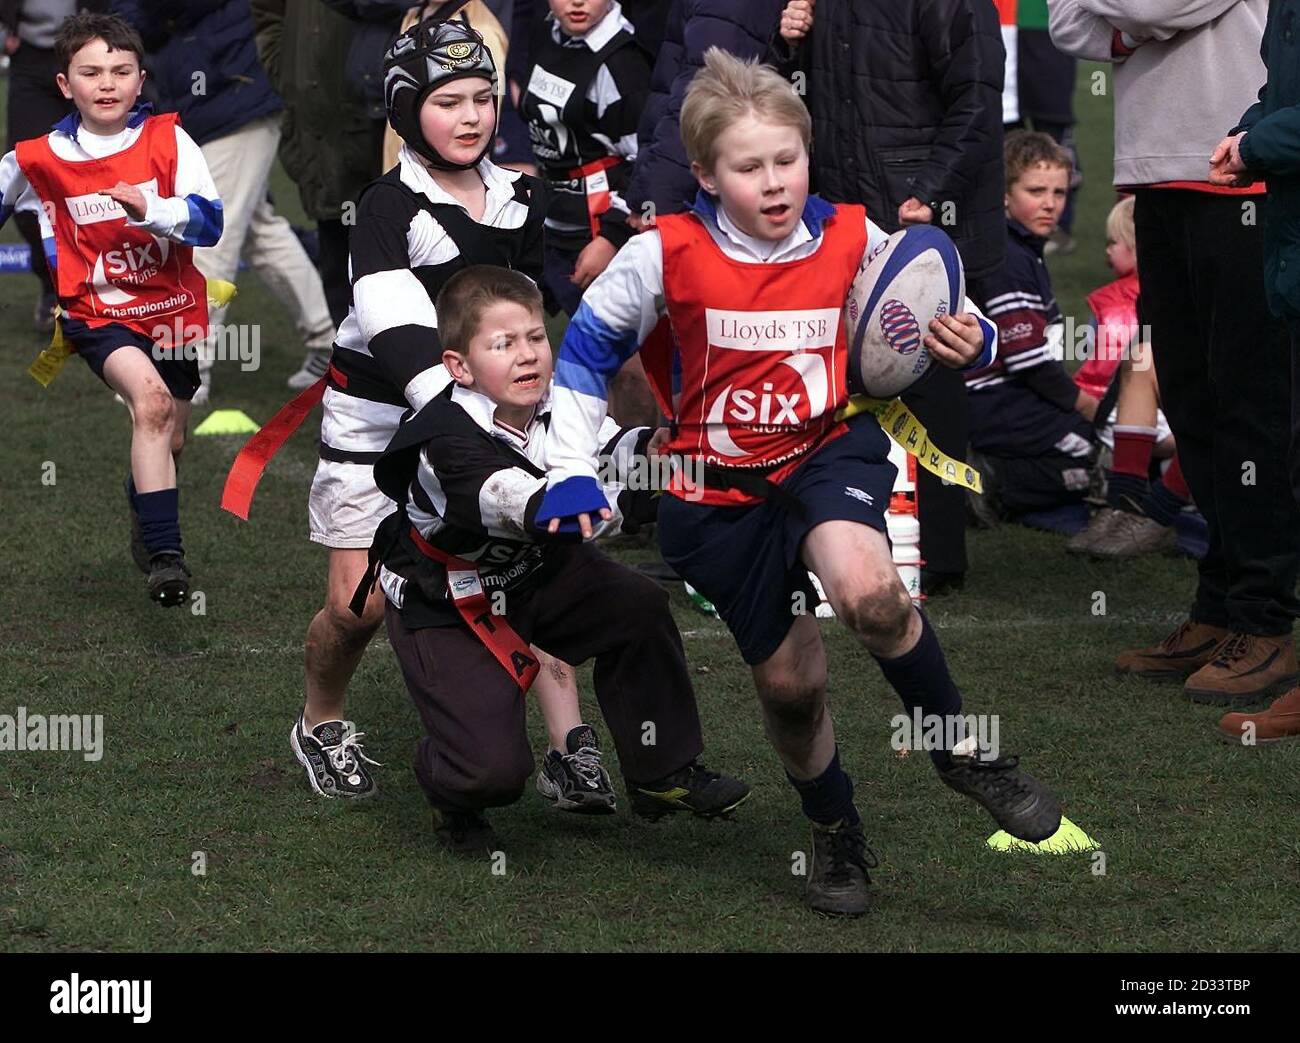 Kinder aus der Gegend von Manchester nehmen am Lloyds TSB Mini Rugby Festival in Sale, Manchester, Teil. Stockfoto